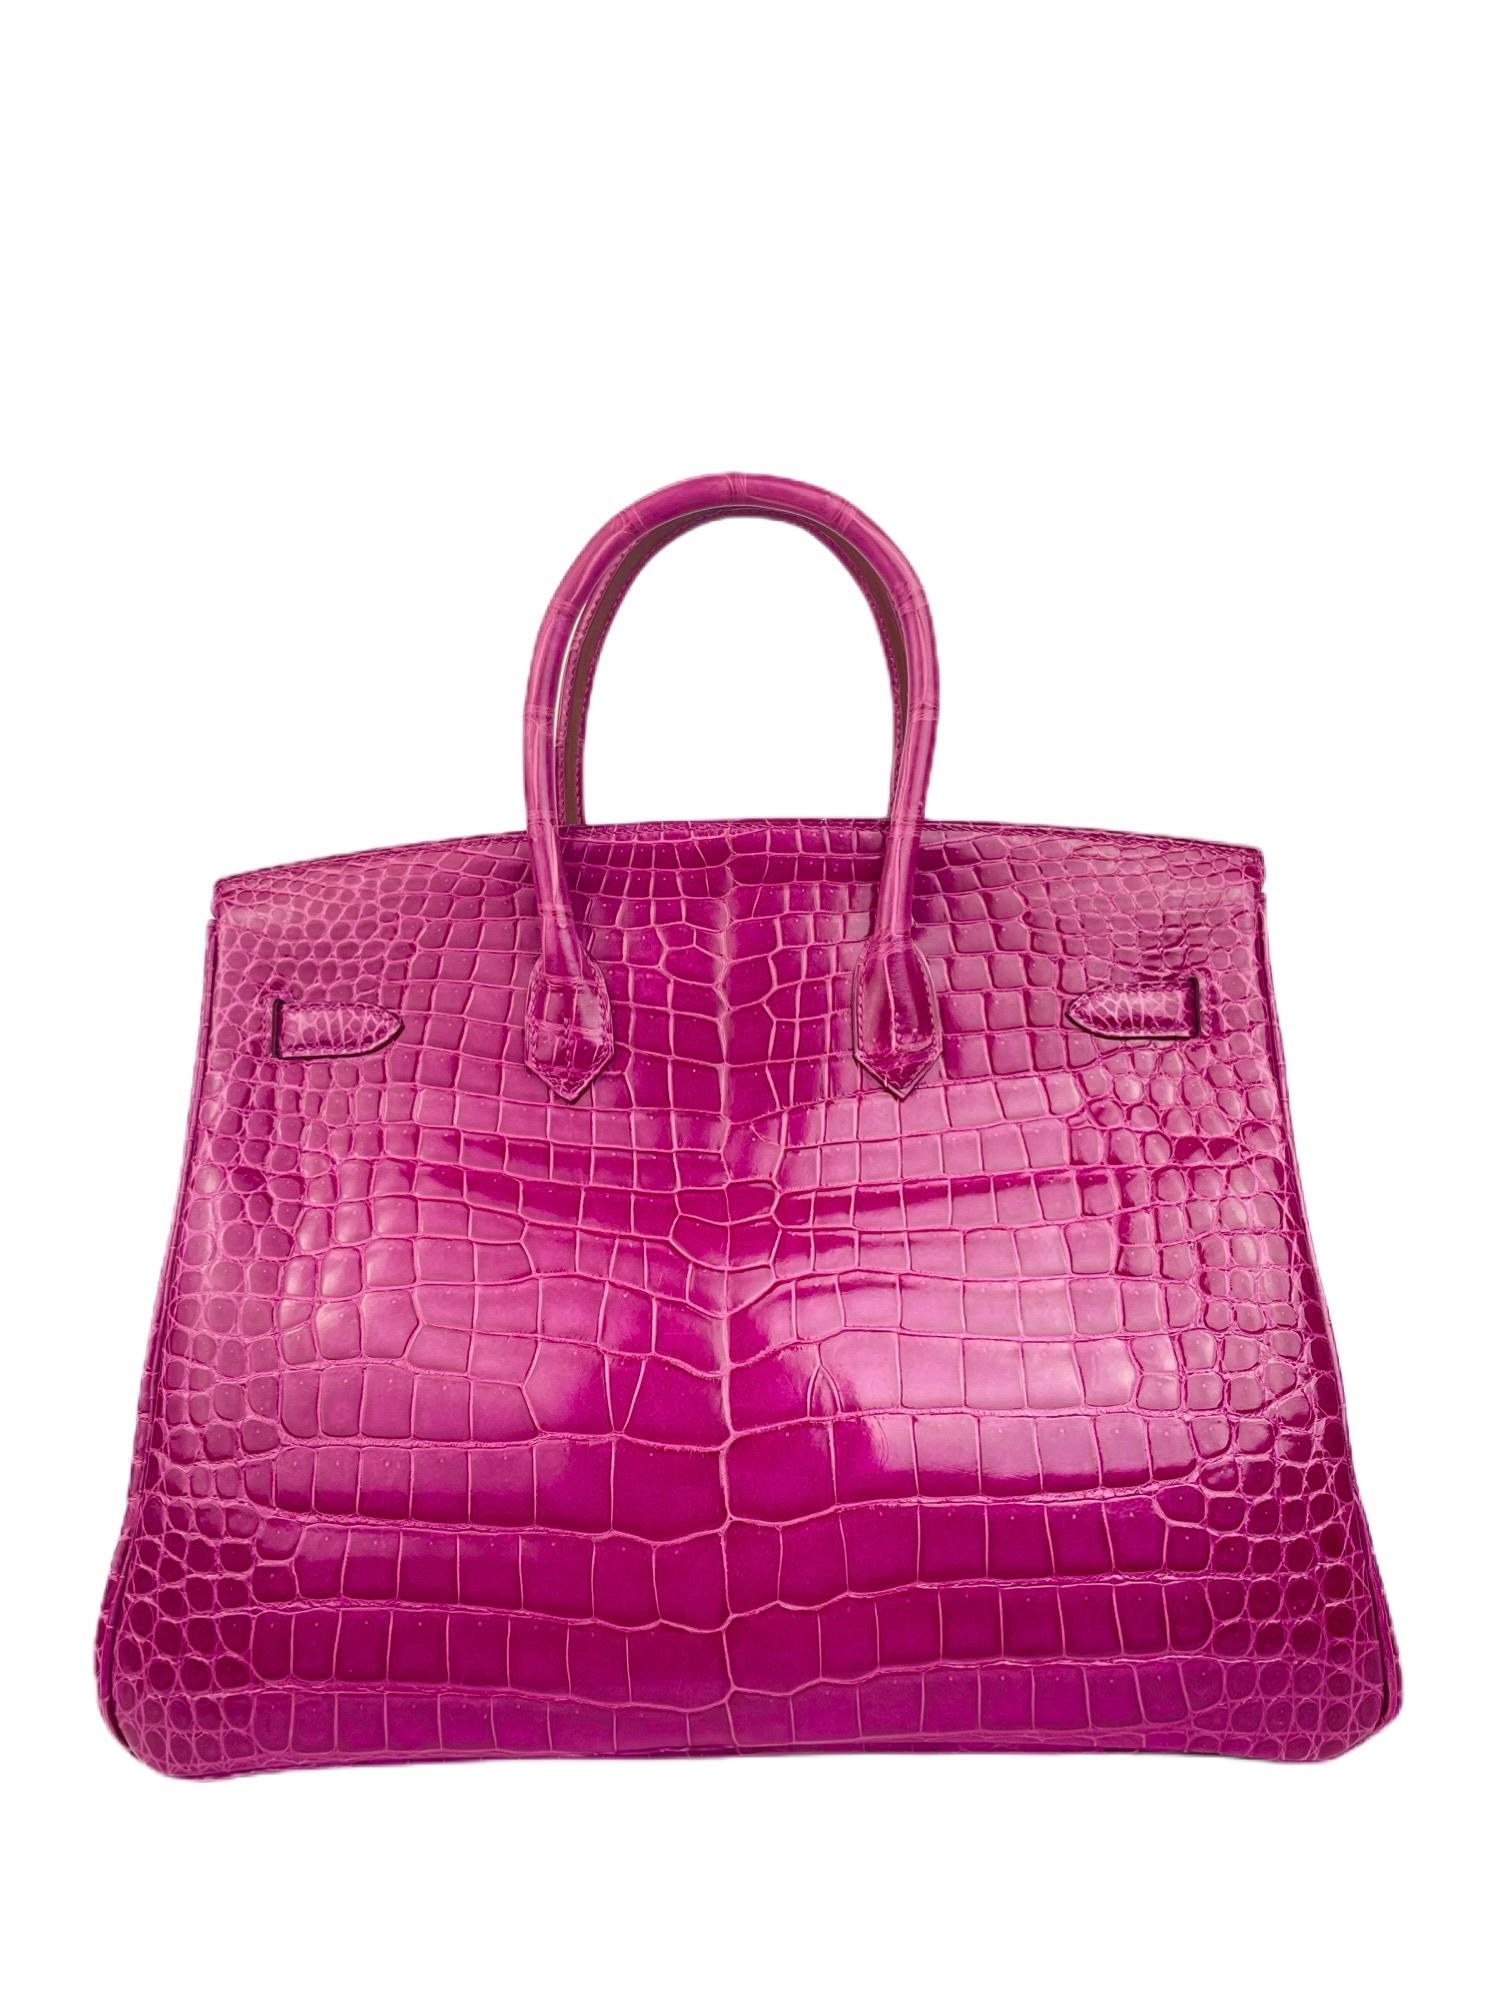 Hermes Birkin 35 Rose Scheherazade Pink Crocodile Gold Hardware In Excellent Condition In Miami, FL